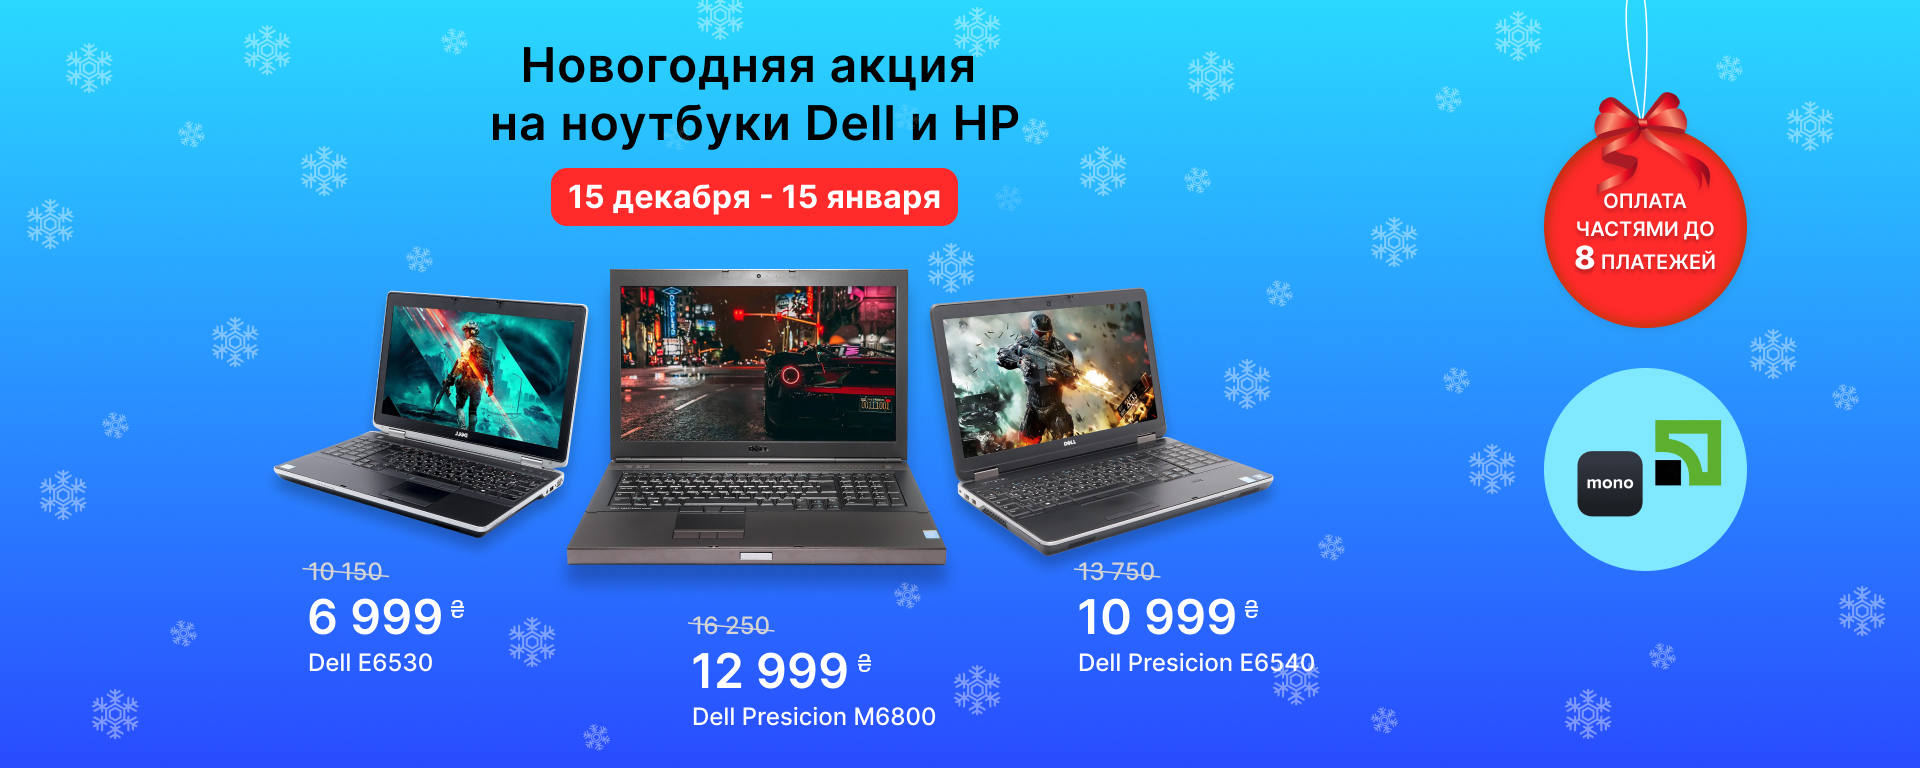 Новогодняя акция на ноутбуки DELL и HP